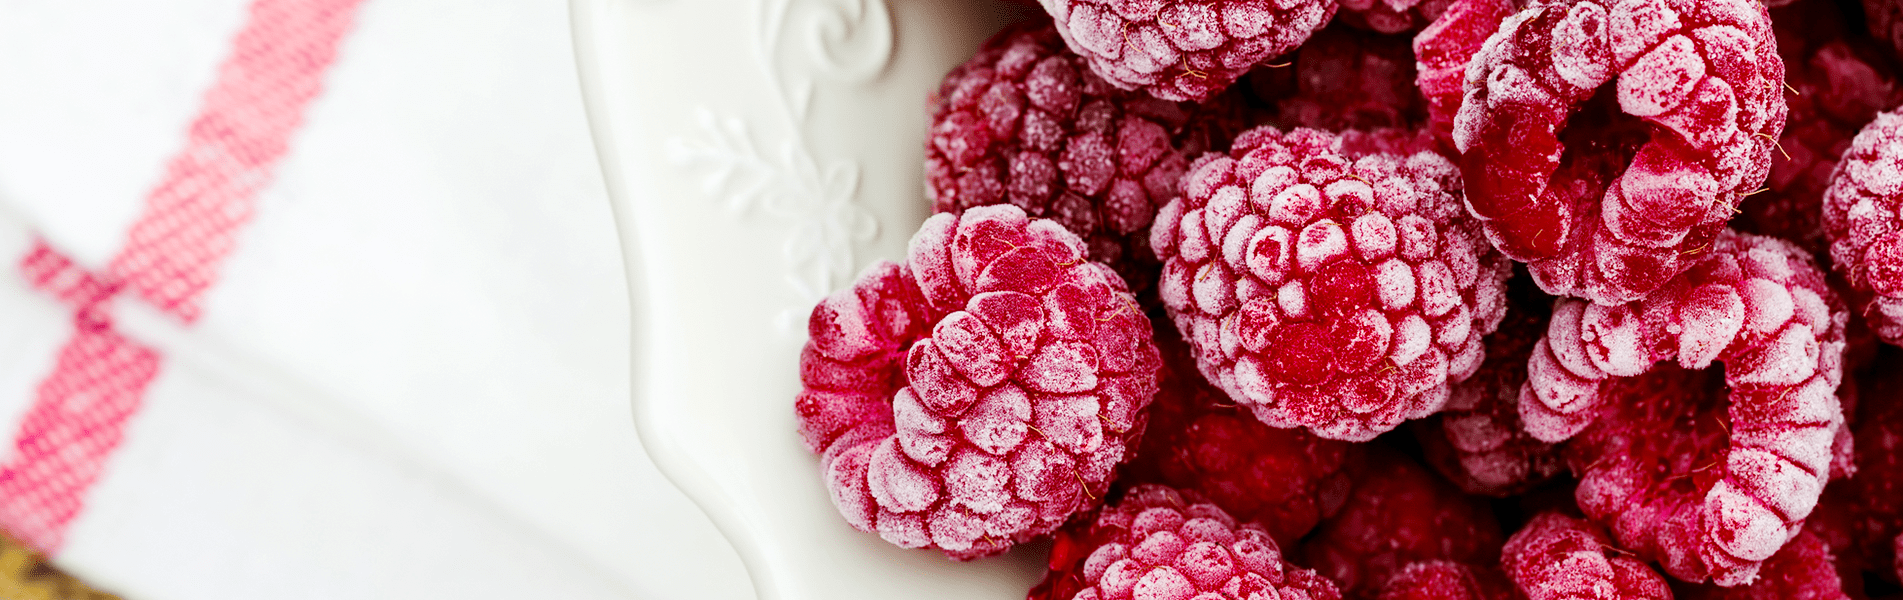 Raspberry Collagen Frozen Treat